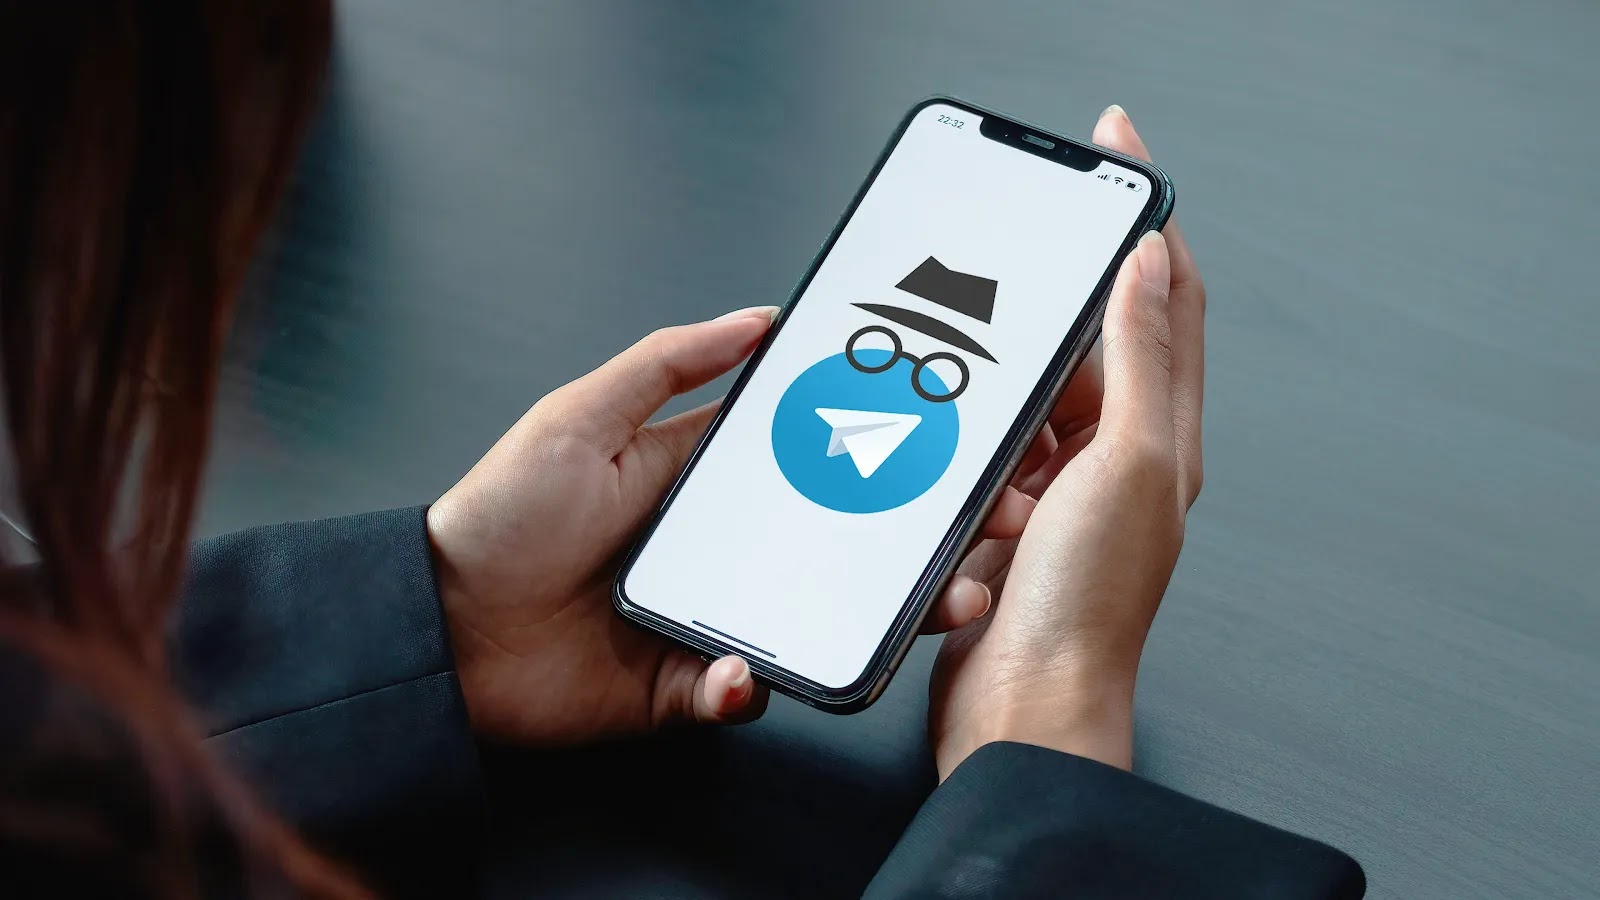 طريقة اخفاء رقم الهاتف في التليجرام telegram تأمين حسابك للحفاظ على خصوصيتك